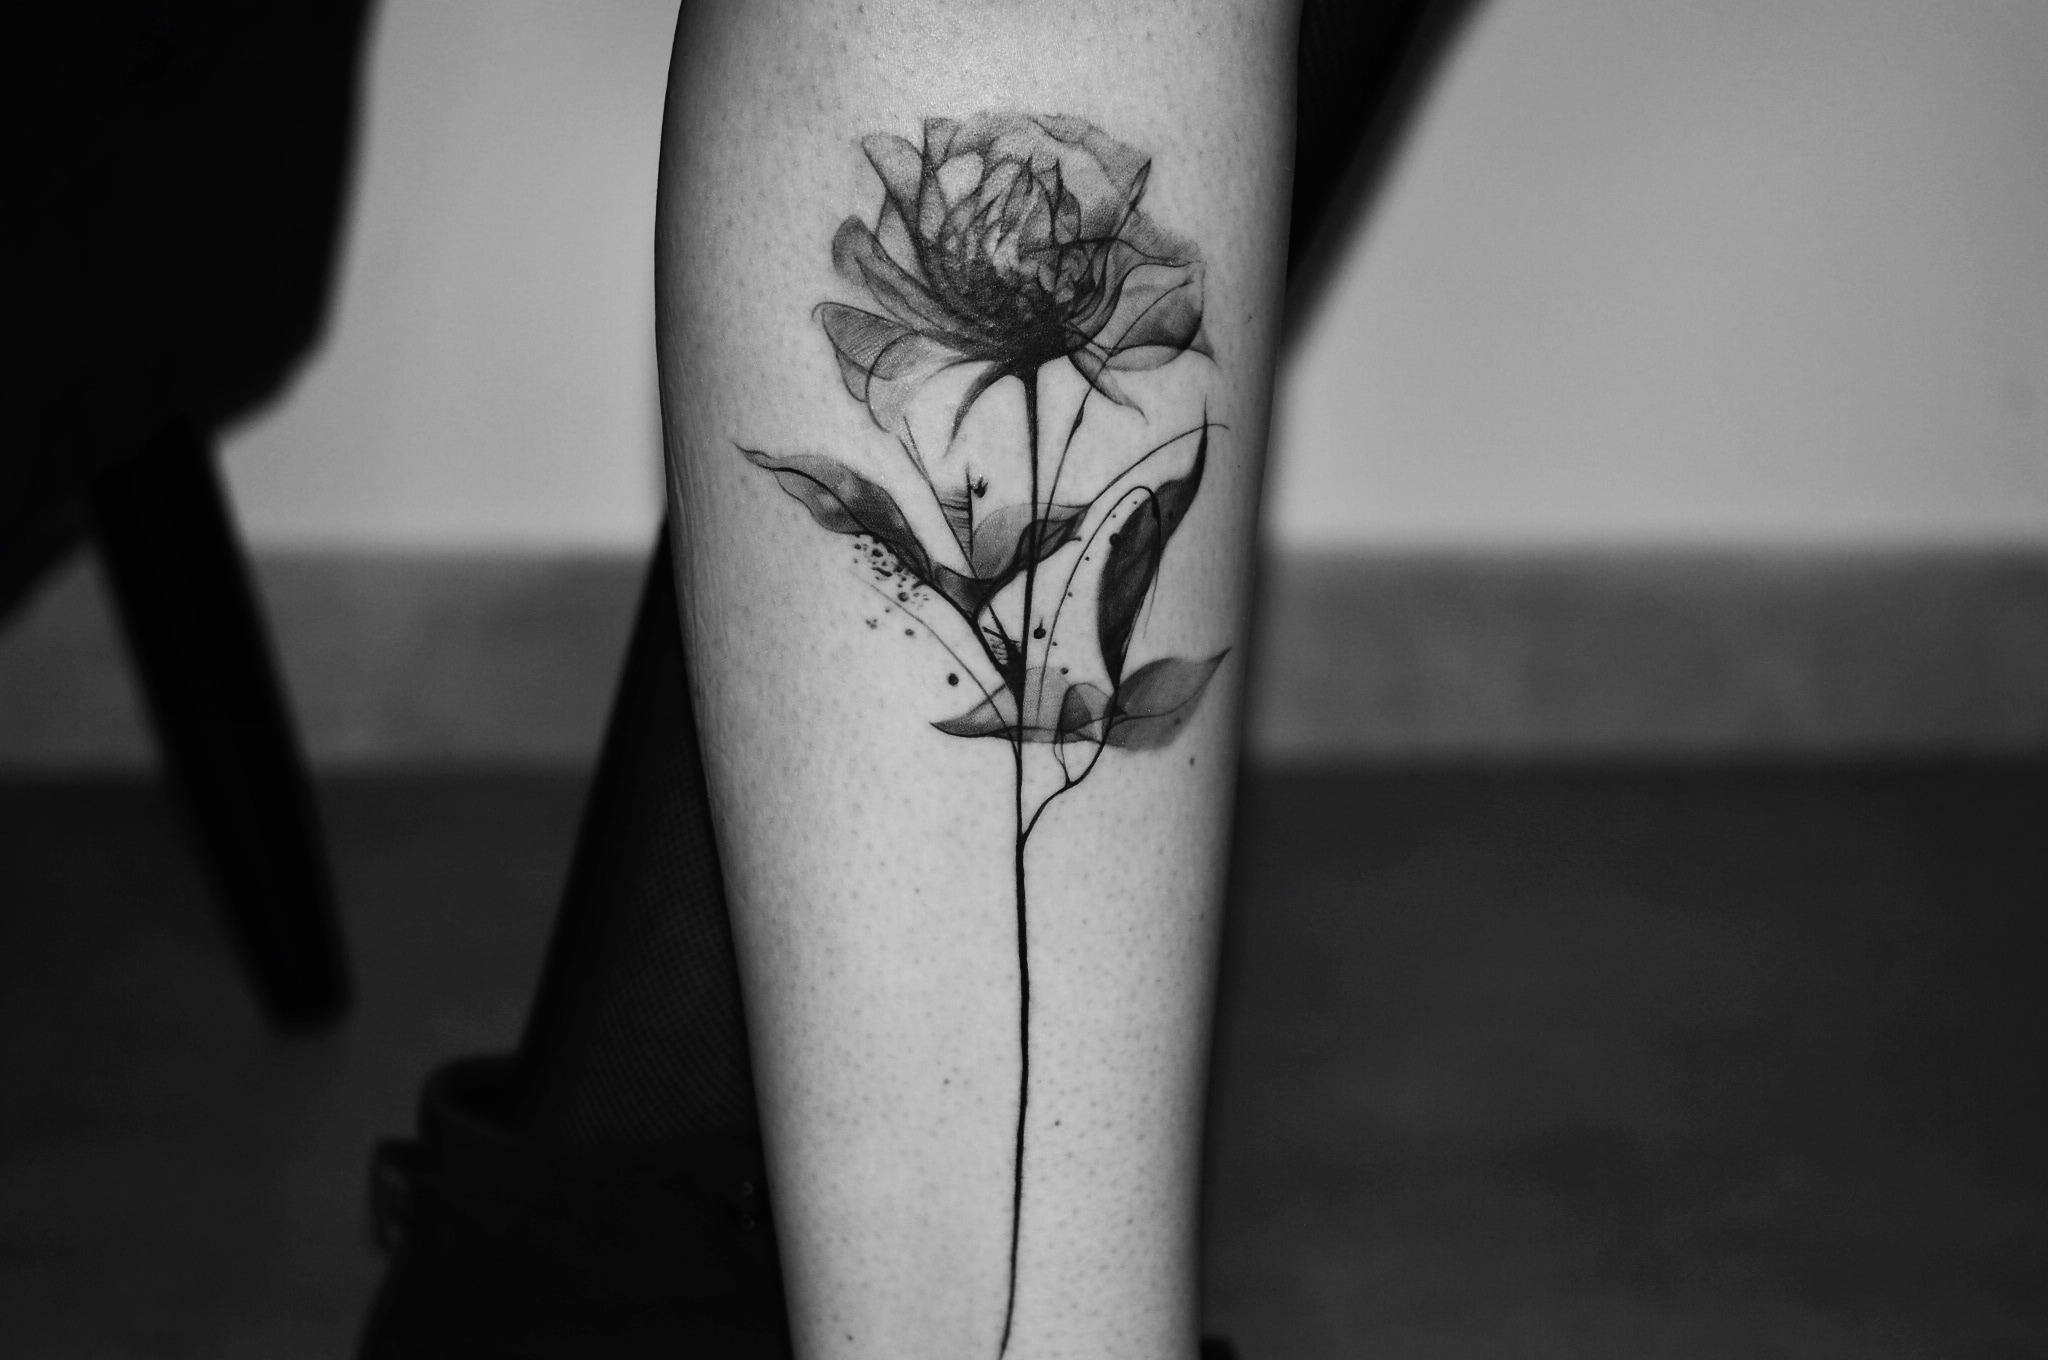 Tatuaż motyw kwiatowy